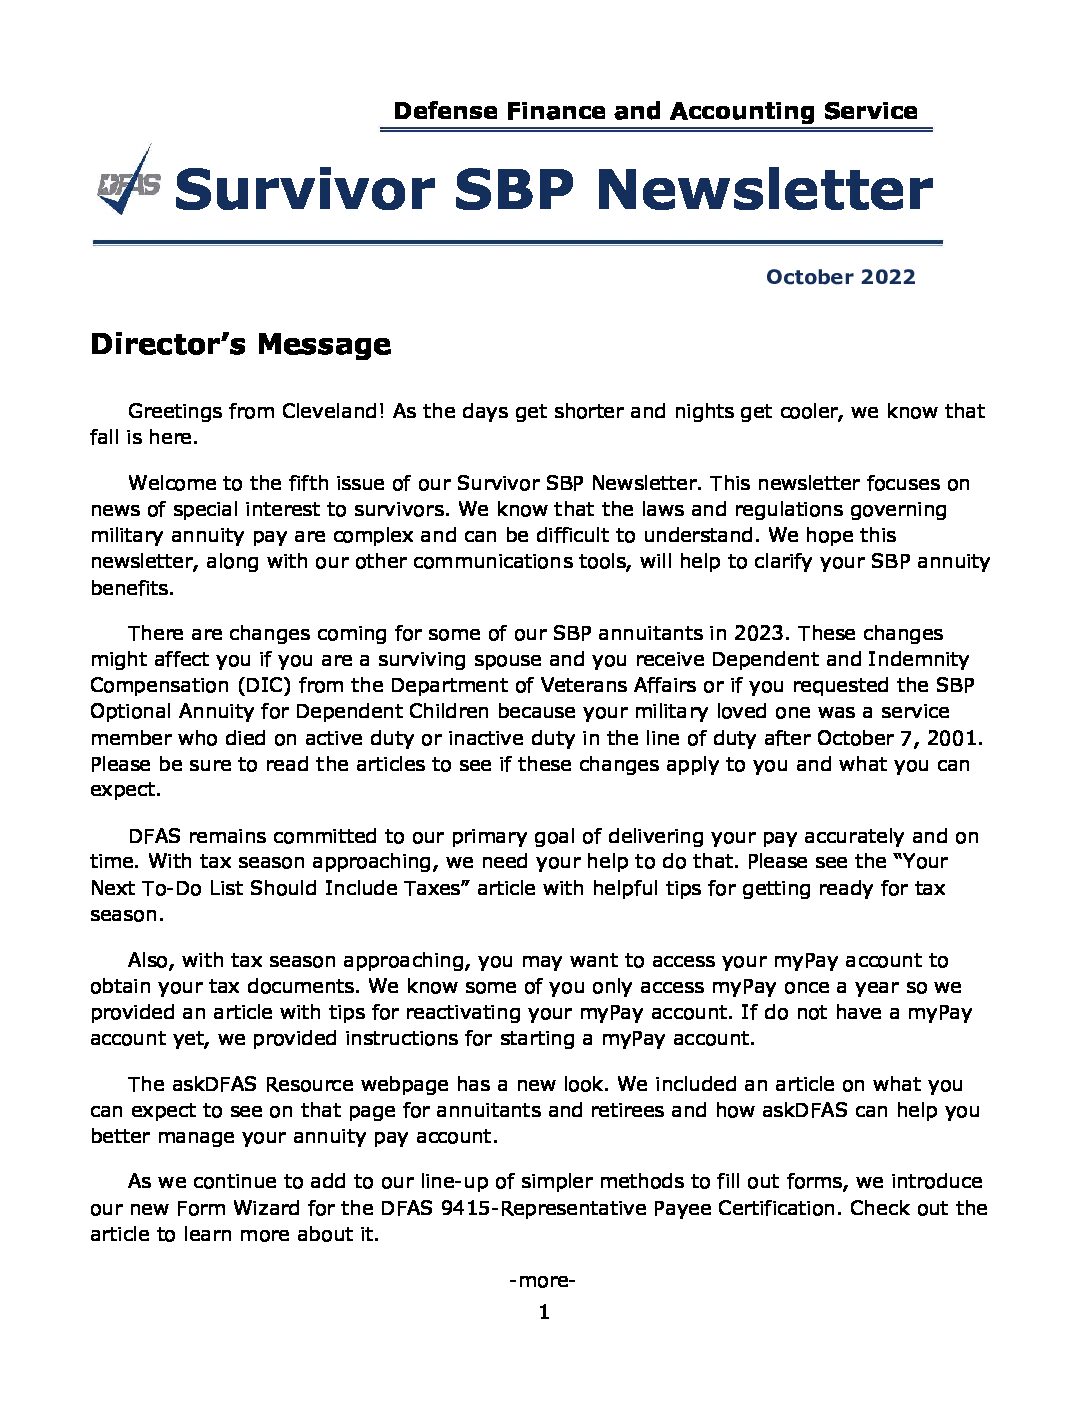 DFAS Survivor SBP Newsletter - 